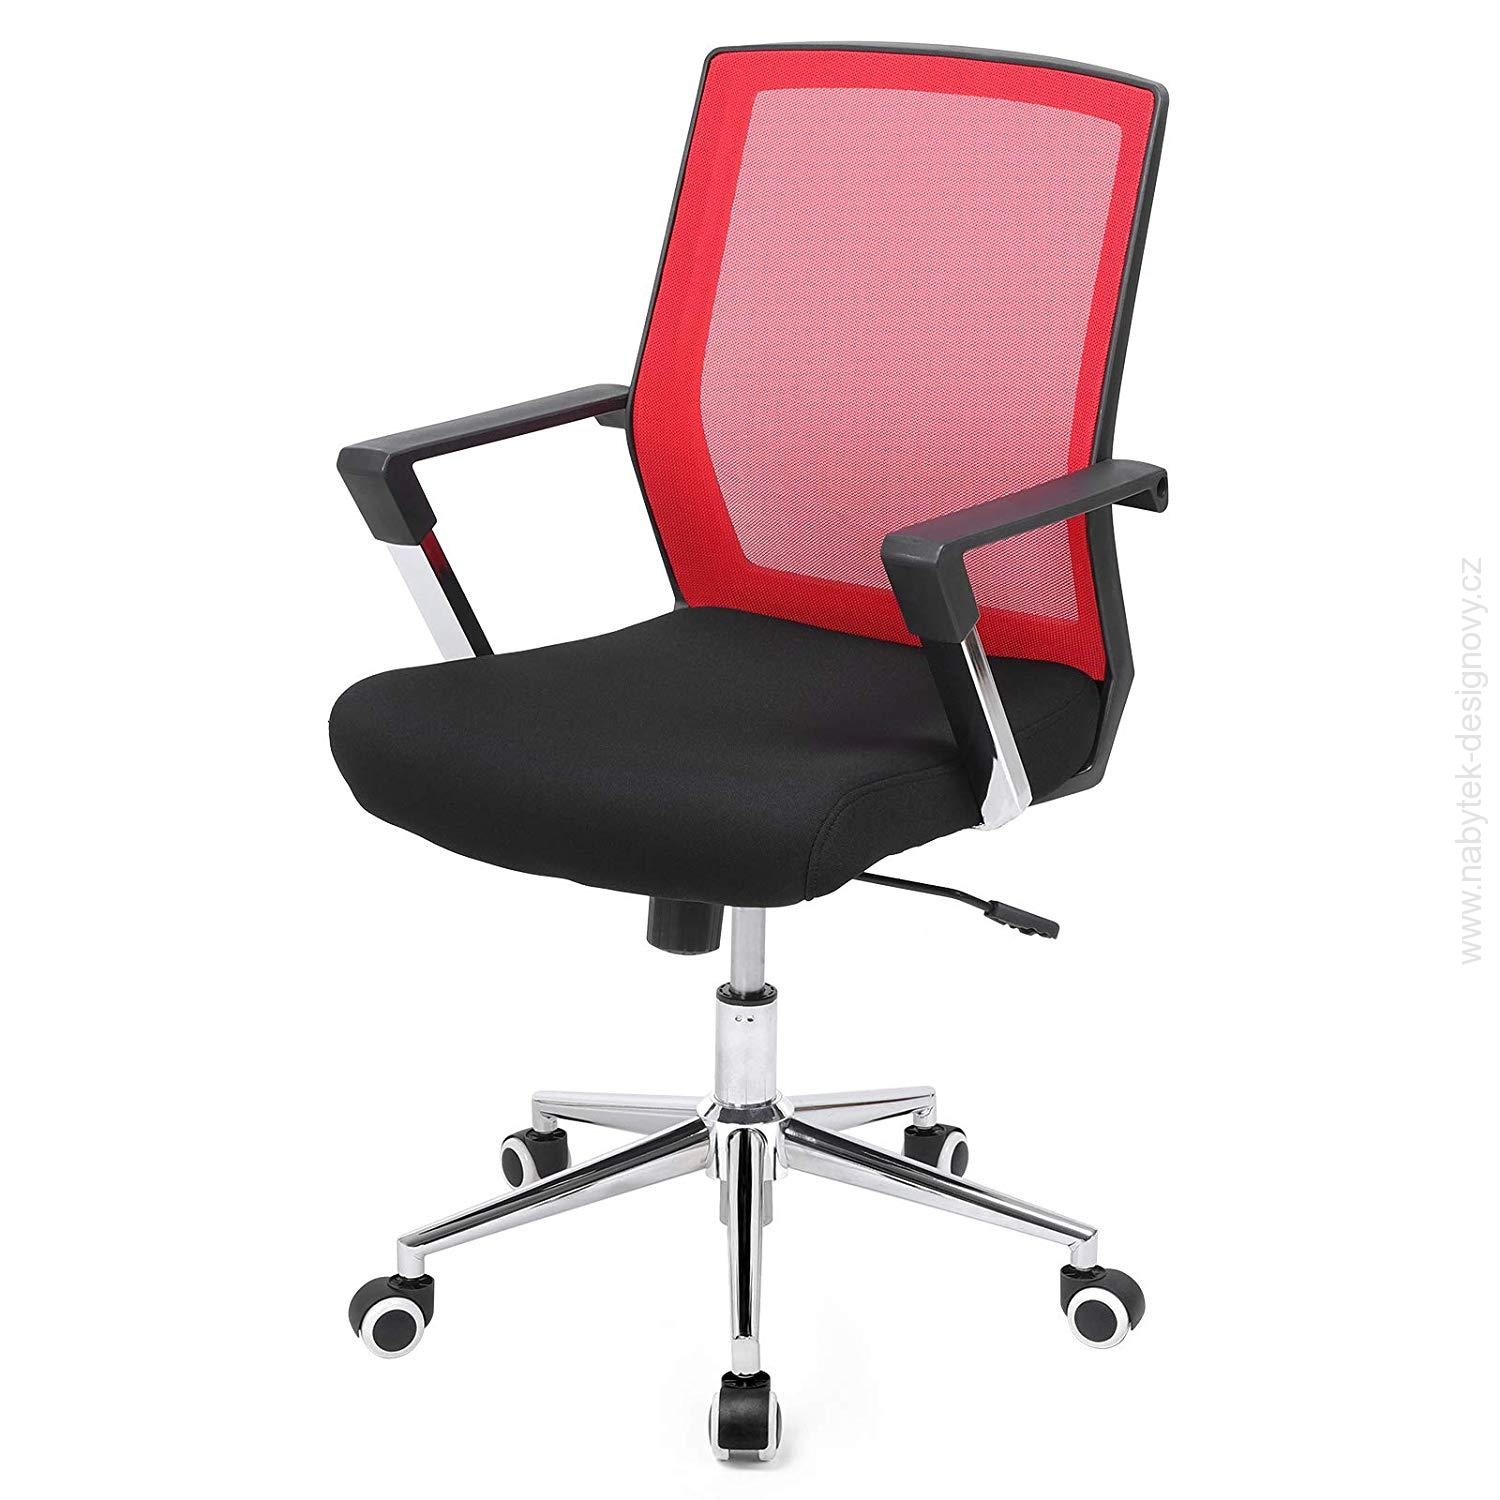 Kancelářská židle Karcoolka, ergonomická nastavitelná, nosnost 150 kg